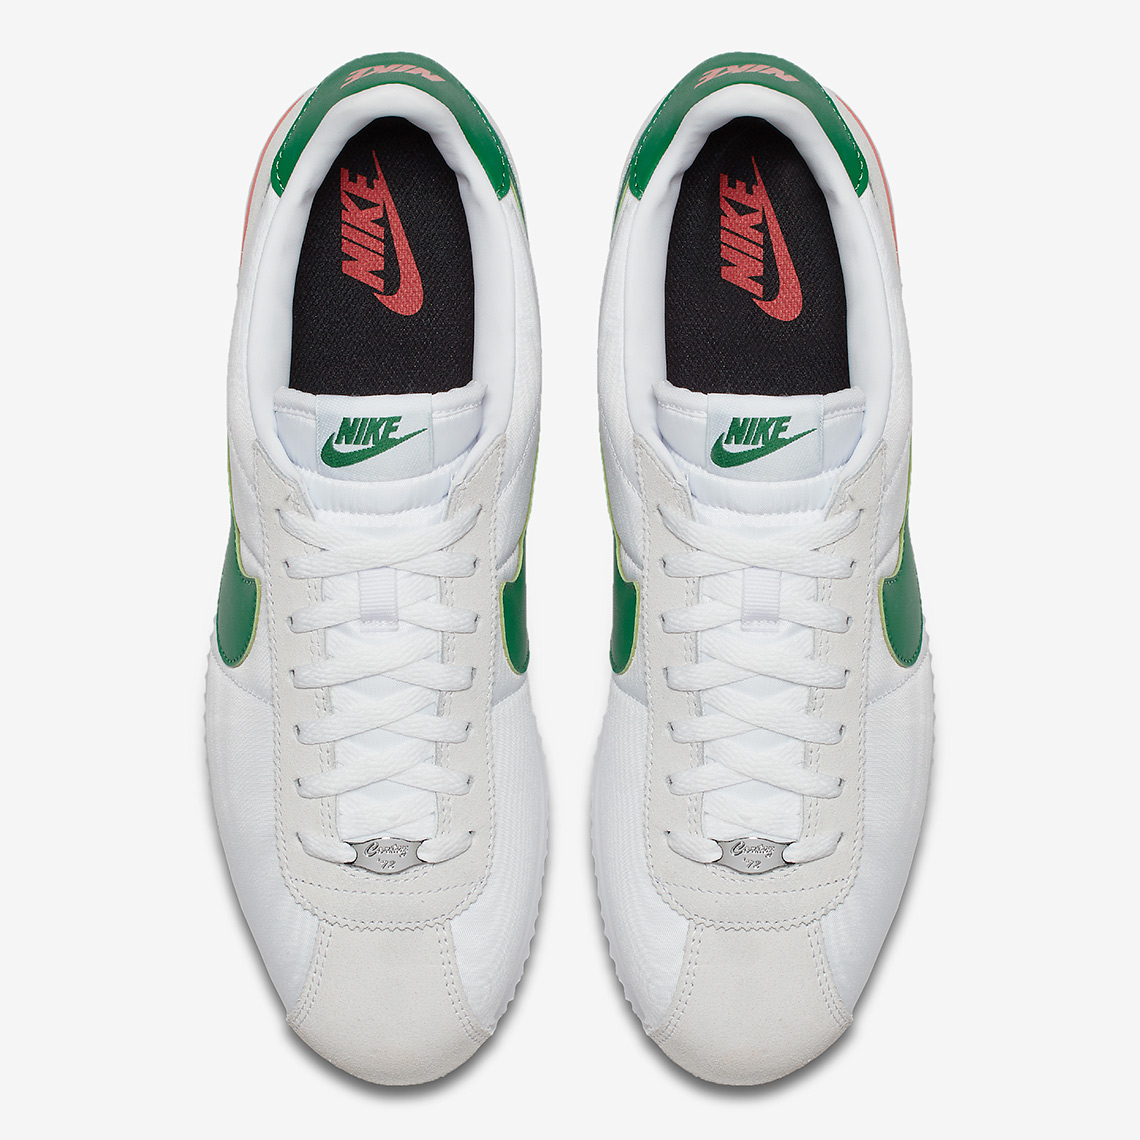 Nike Cortez 819720-103 Cinco de Mayo 